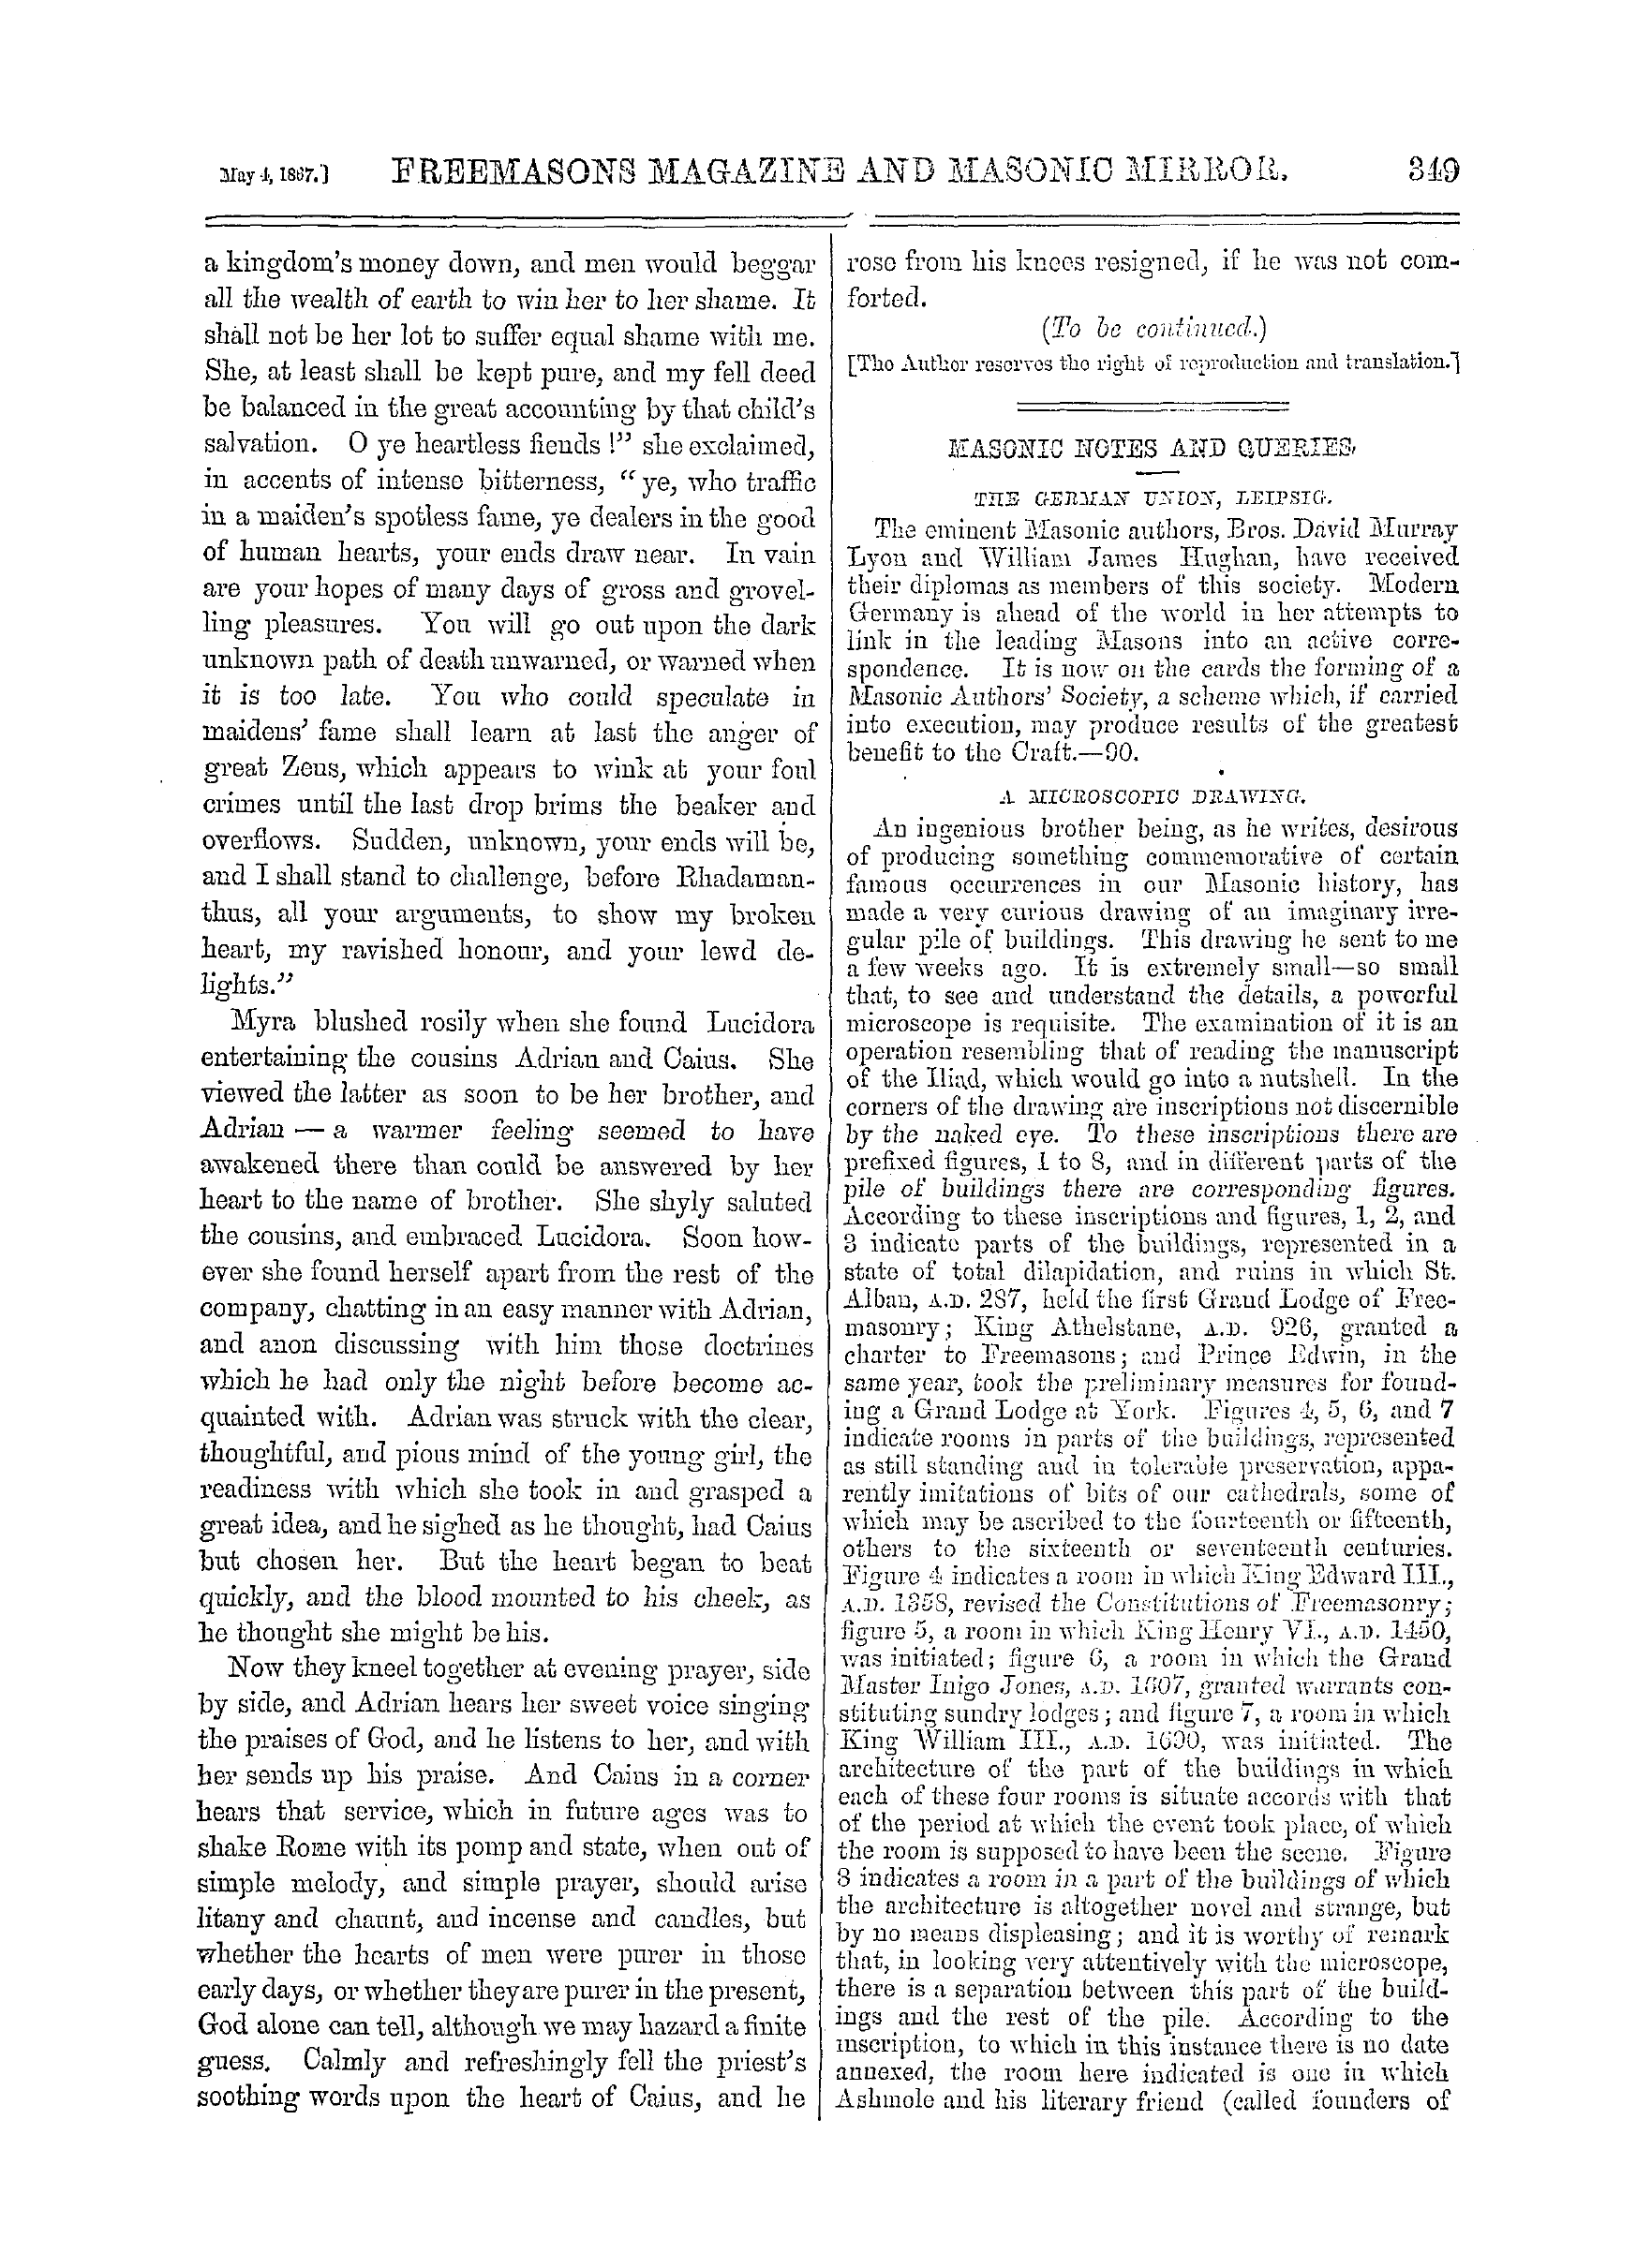 The Freemasons' Monthly Magazine: 1867-05-04: 9